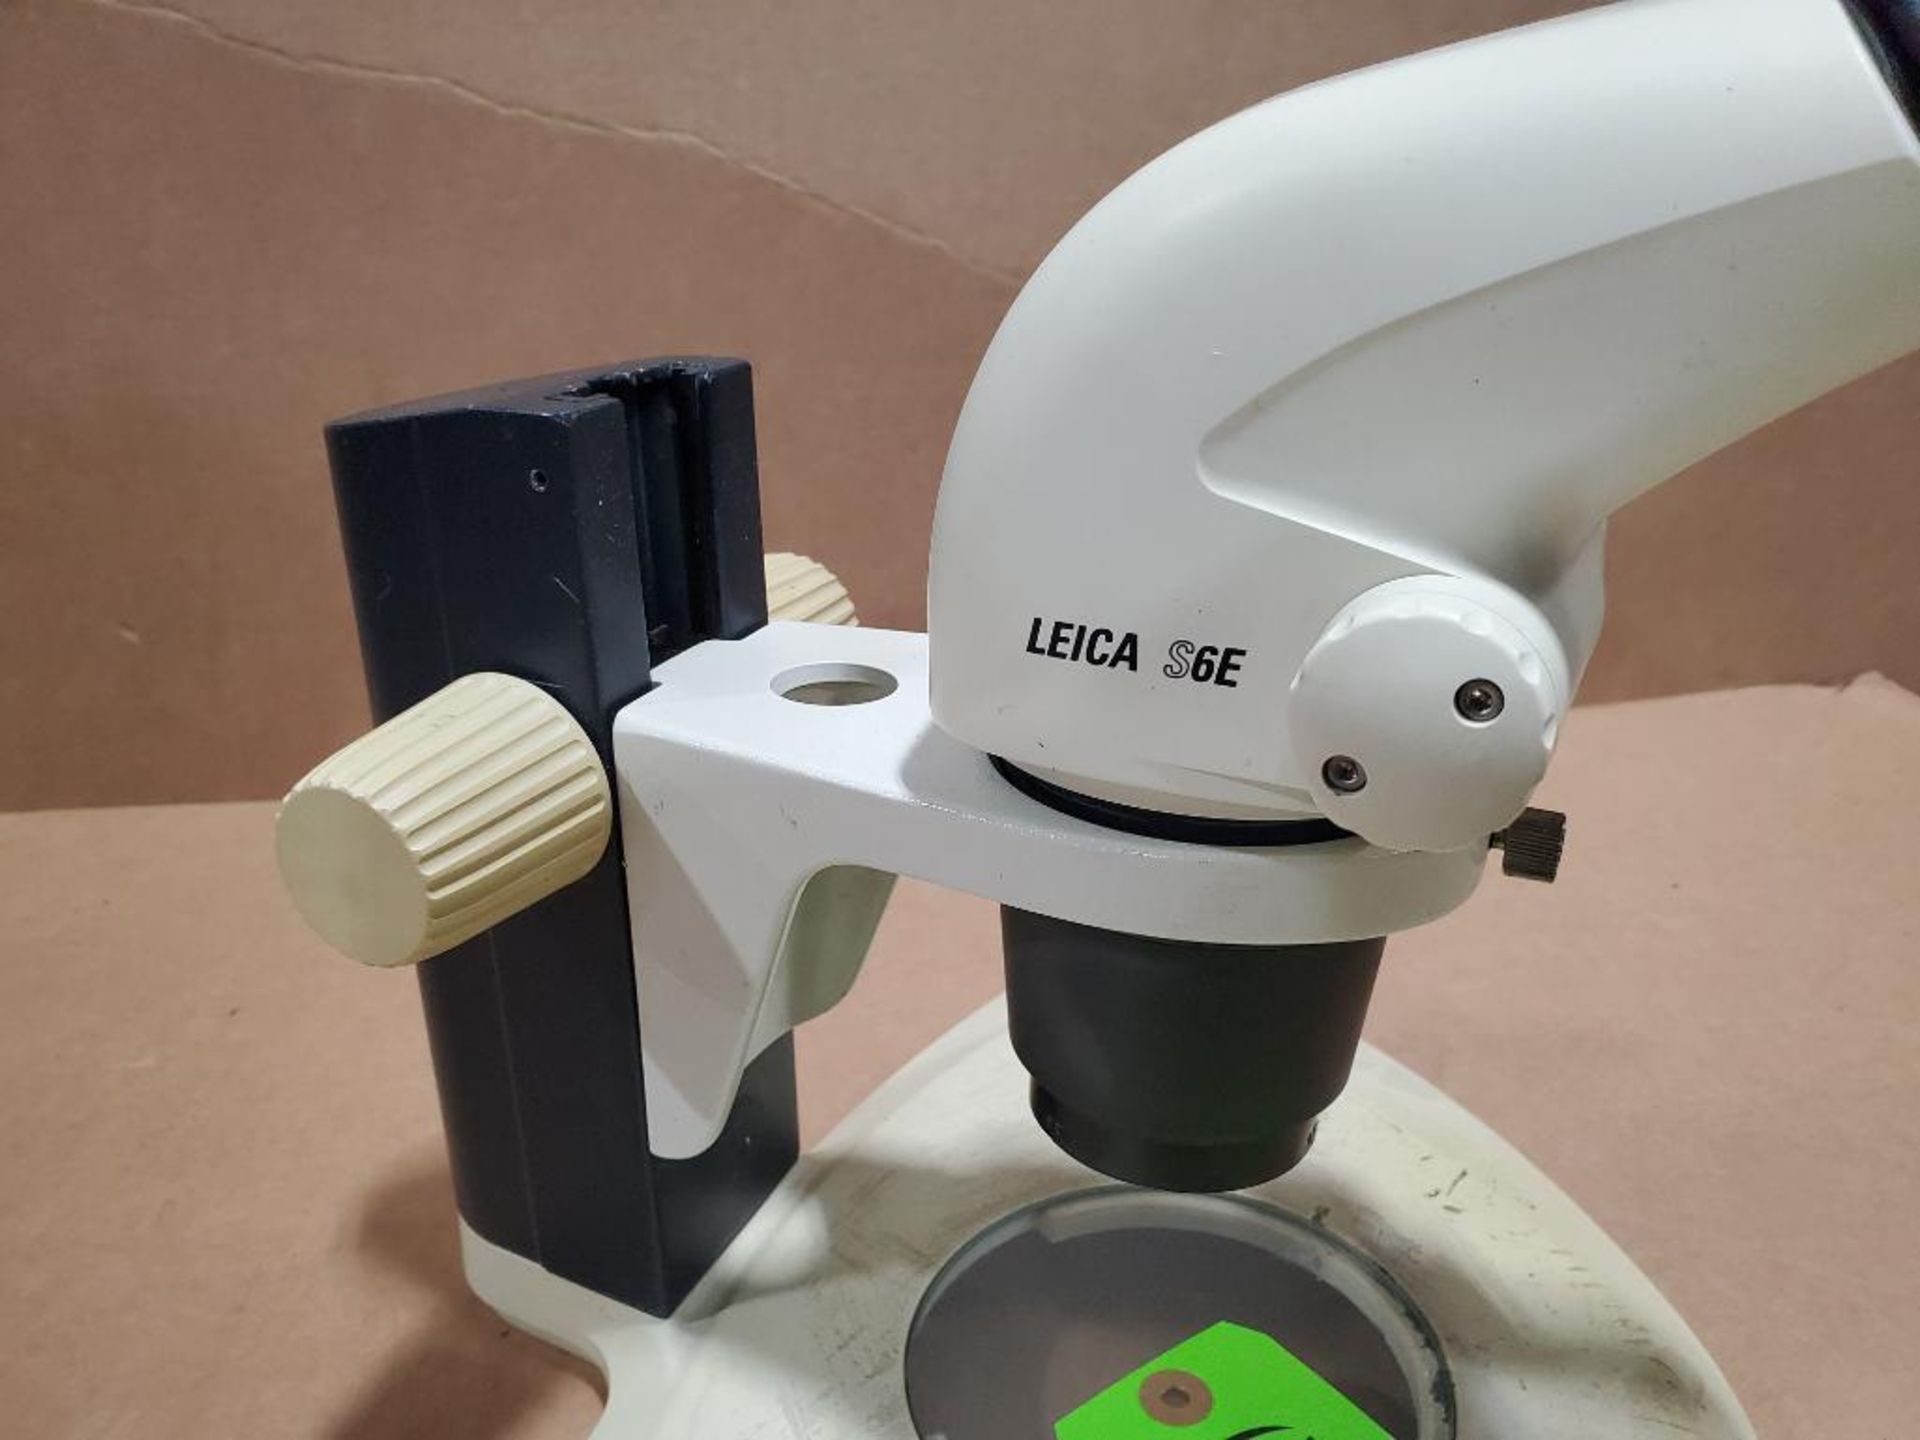 Leica S6E microscope. - Image 2 of 5